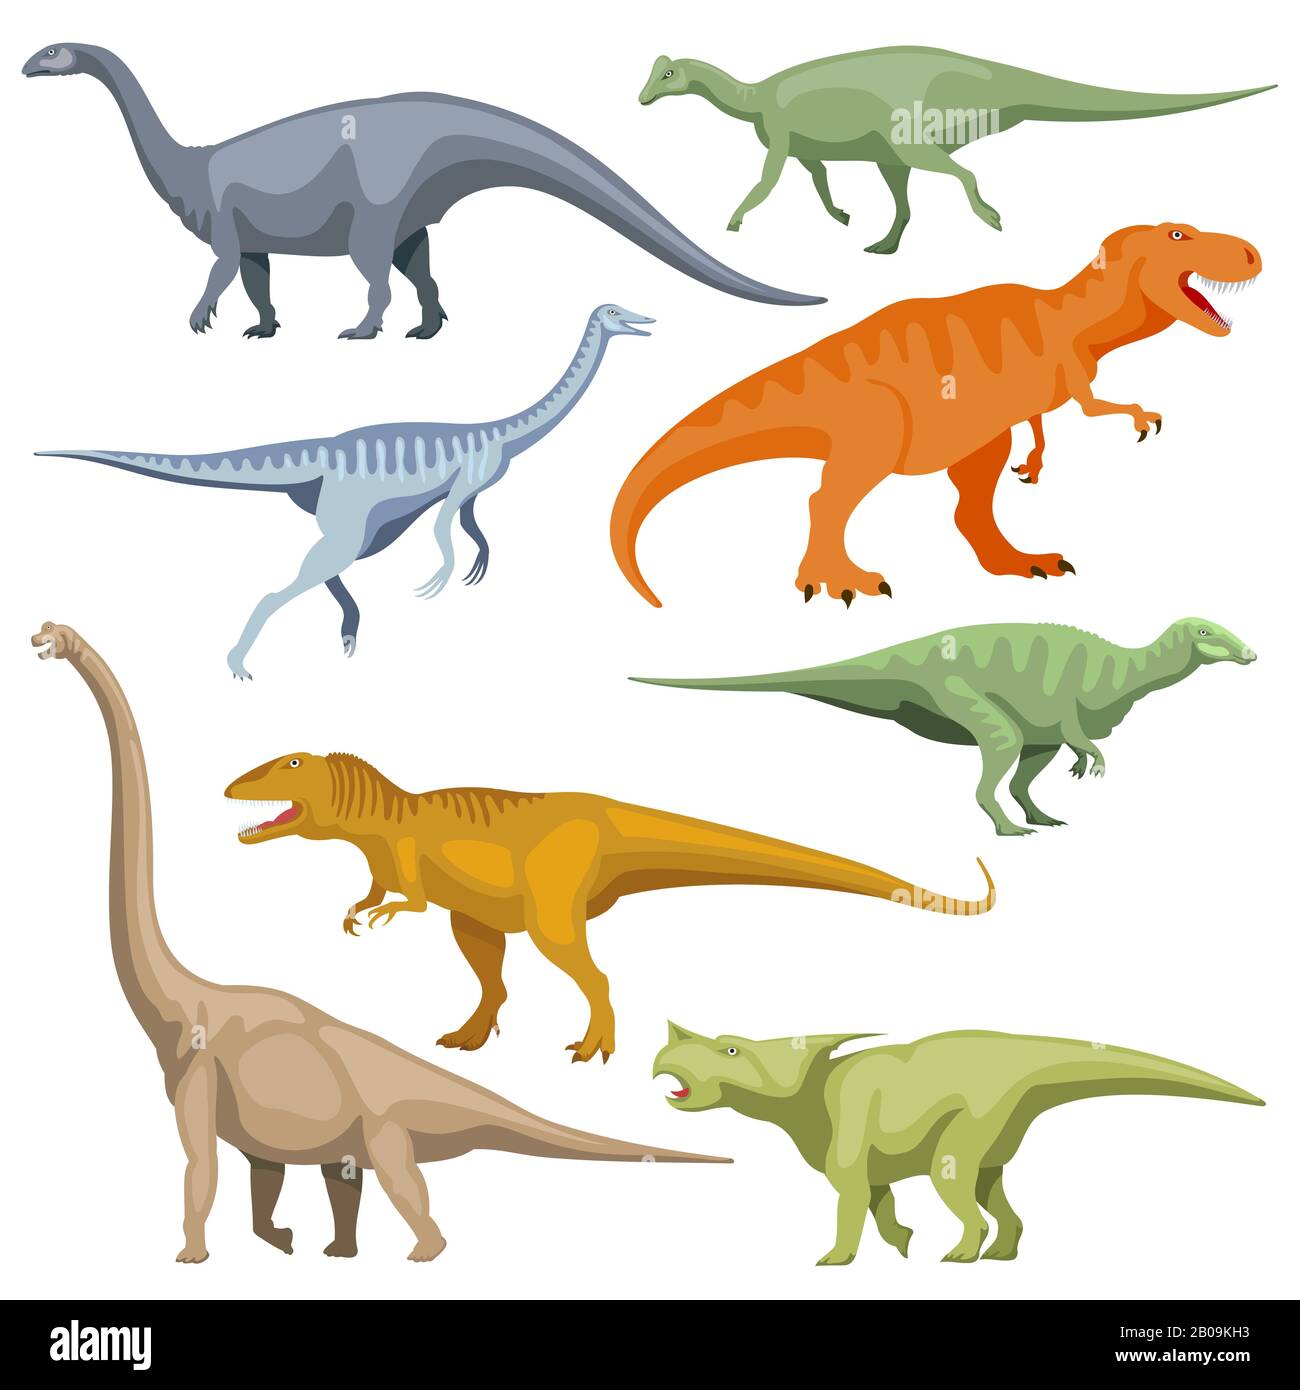 Cartoon dinosaurus, reptiles vector. Set of color cartoon dinosaur, illustration of prehistoric predator dinosaur Stock Vector